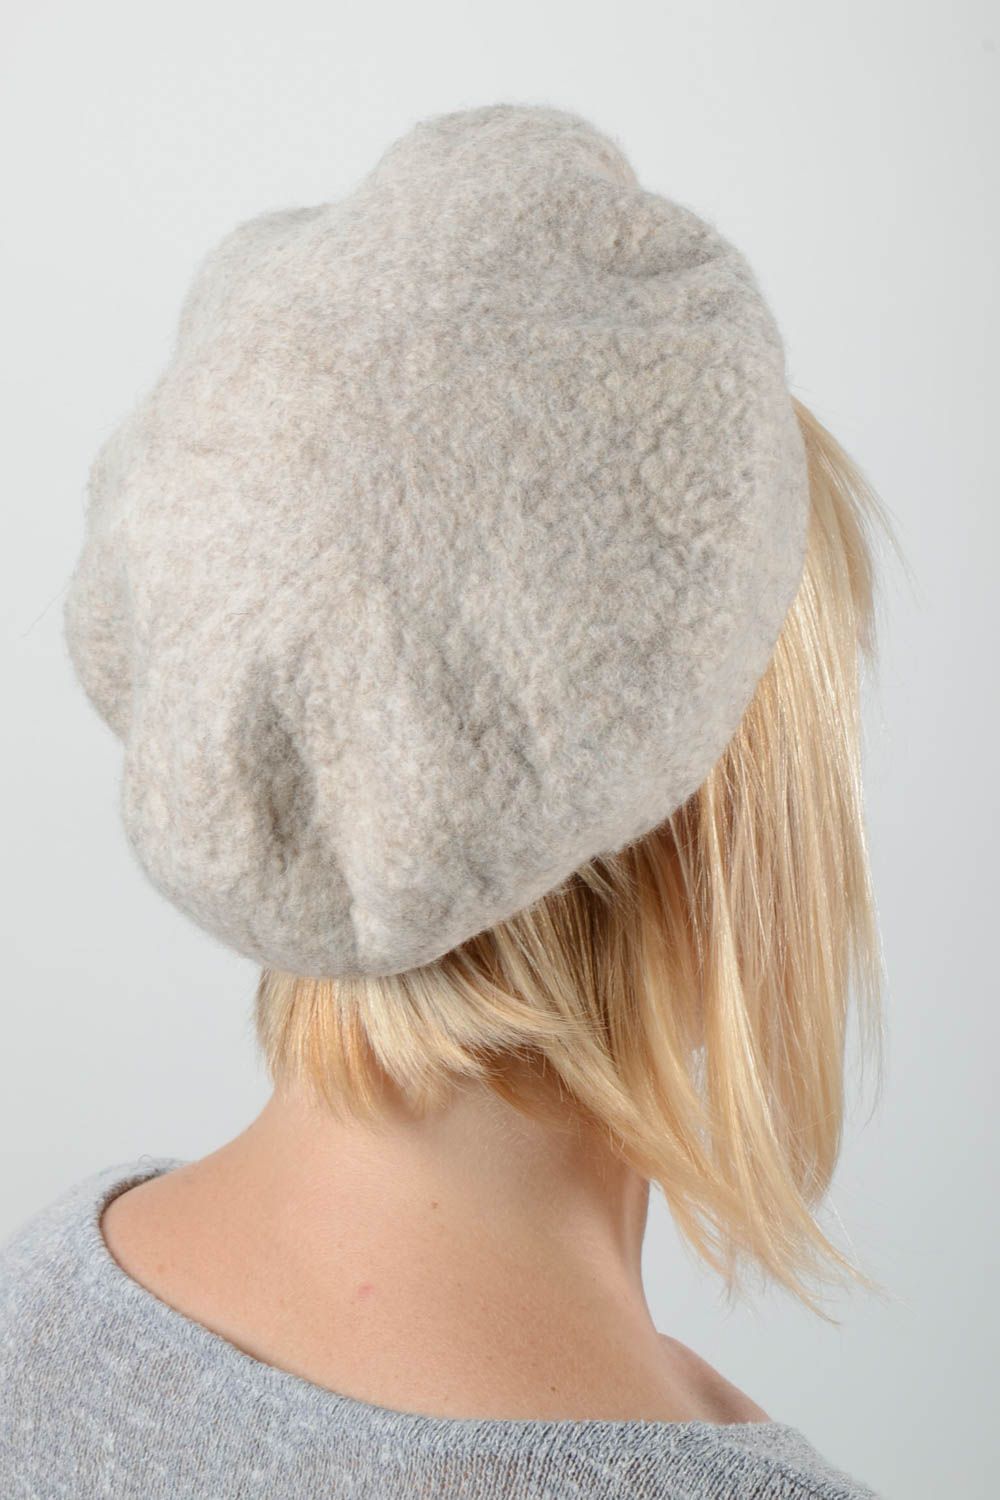 Handmade woolen beret stylish female headwear unusual cap for women cute hat photo 2